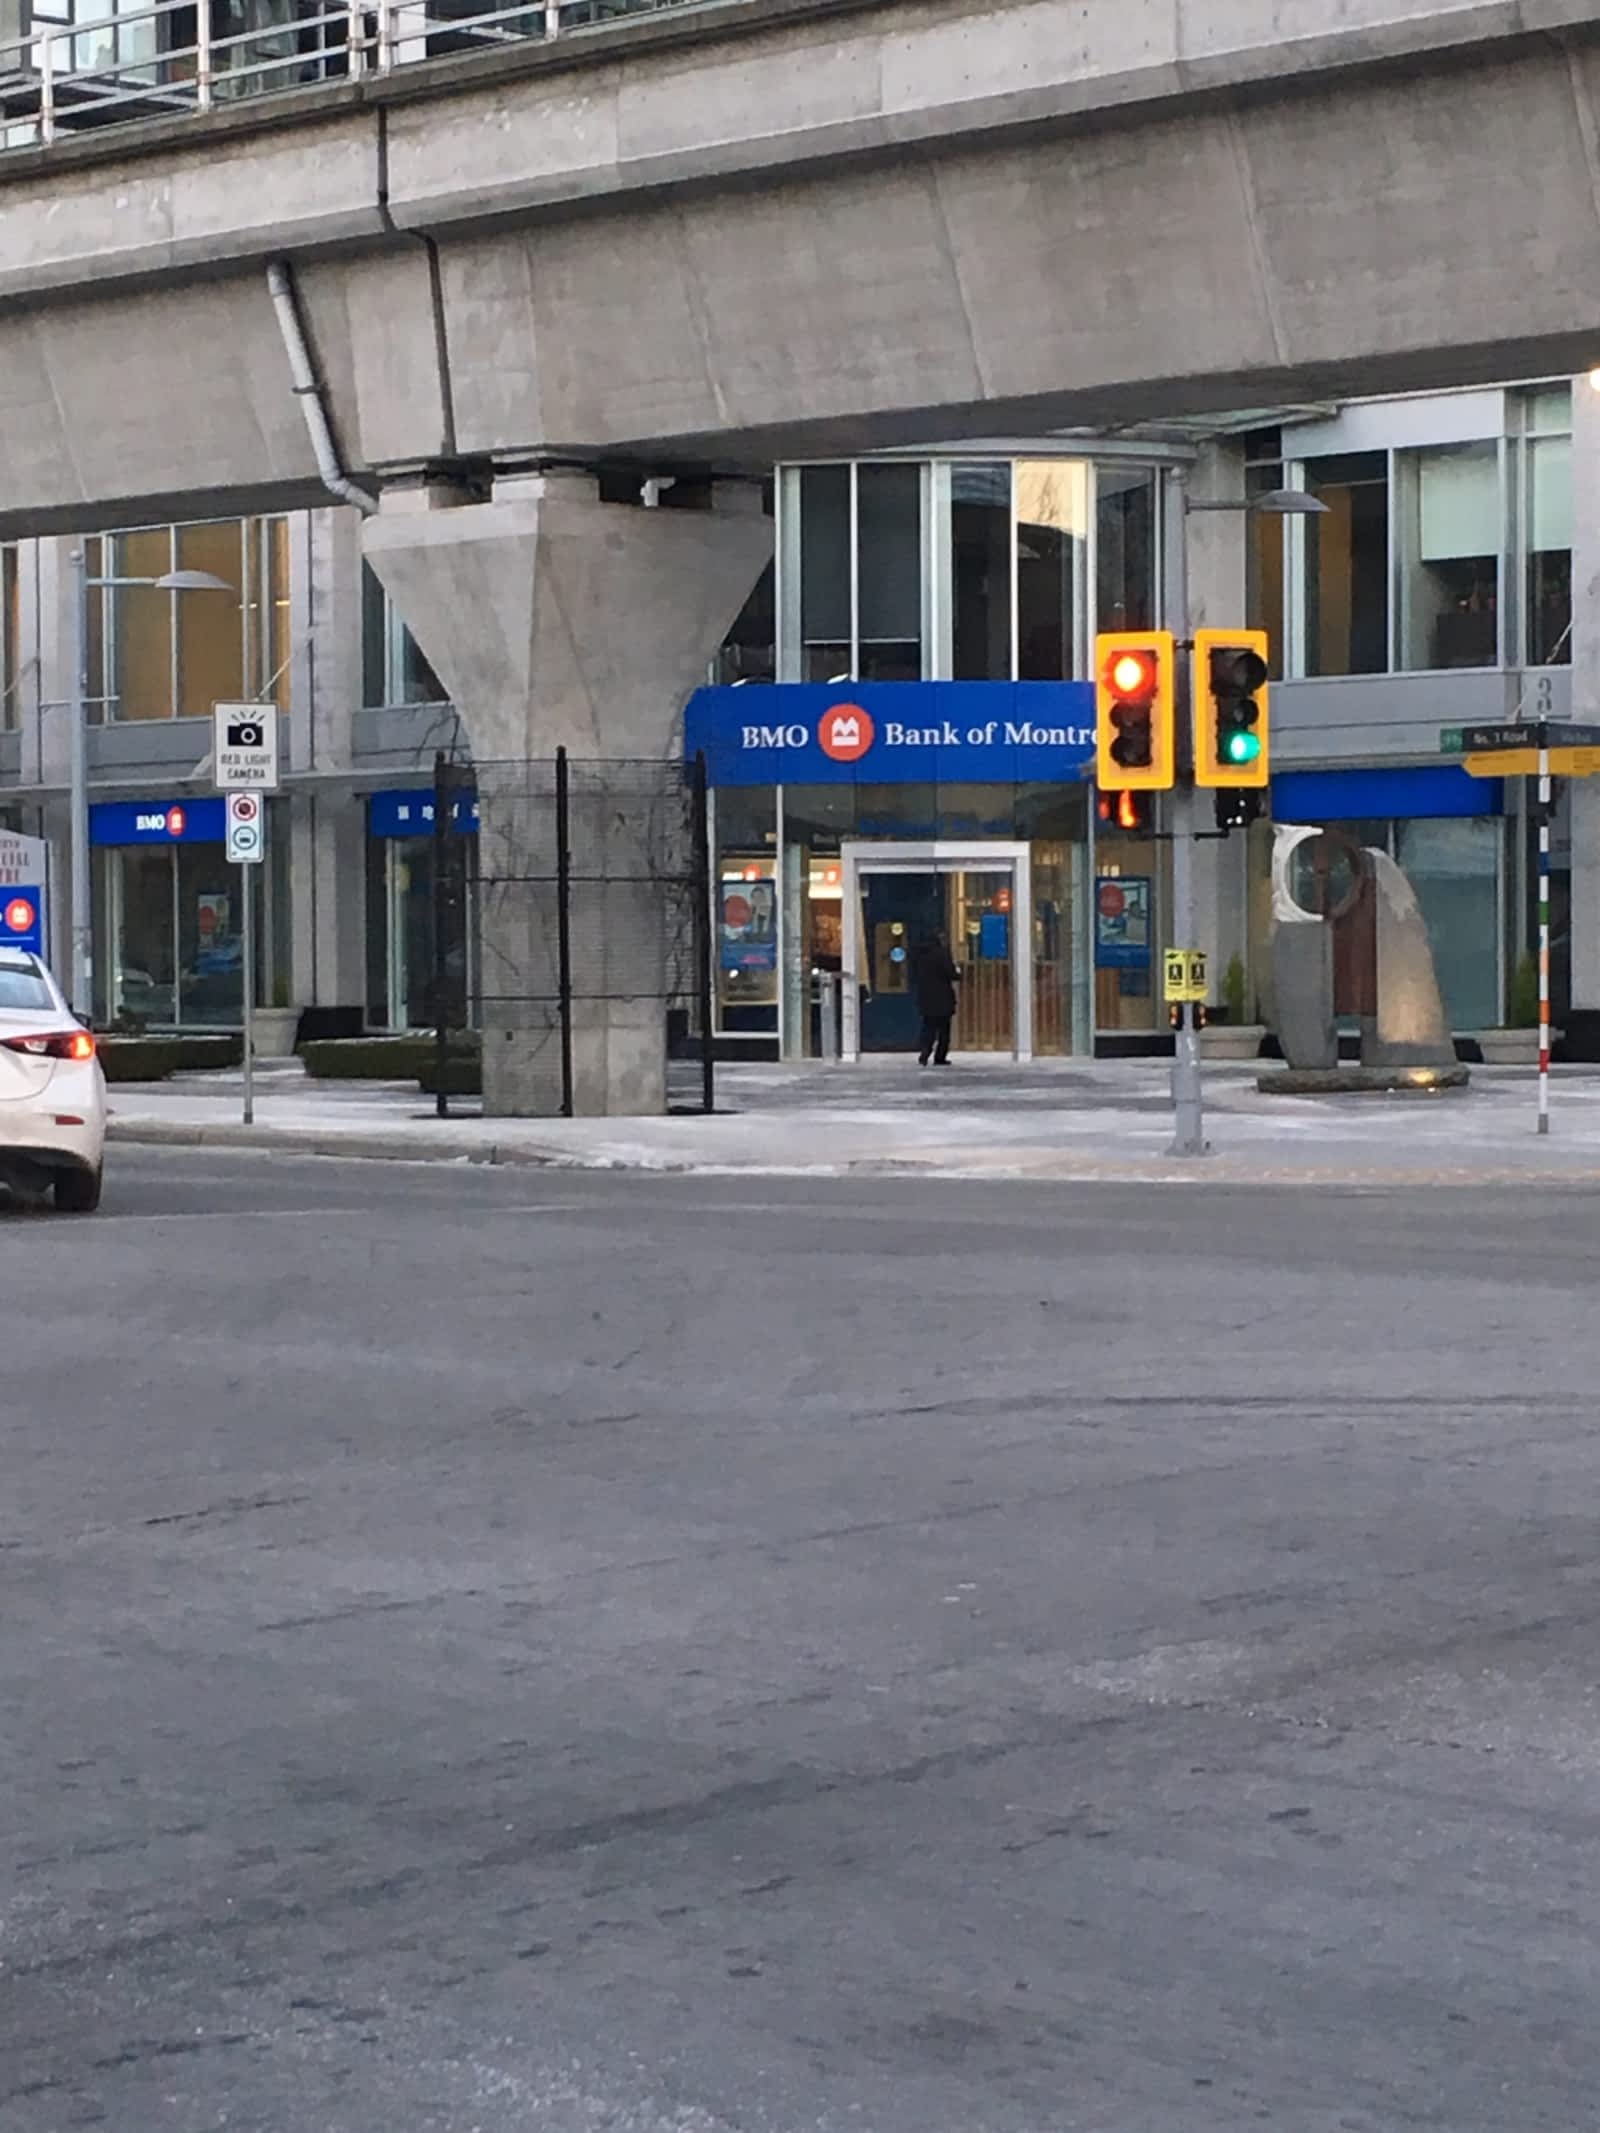 Bmo Bank Of Montreal 100 6088 No 3 Rd Richmond Bc